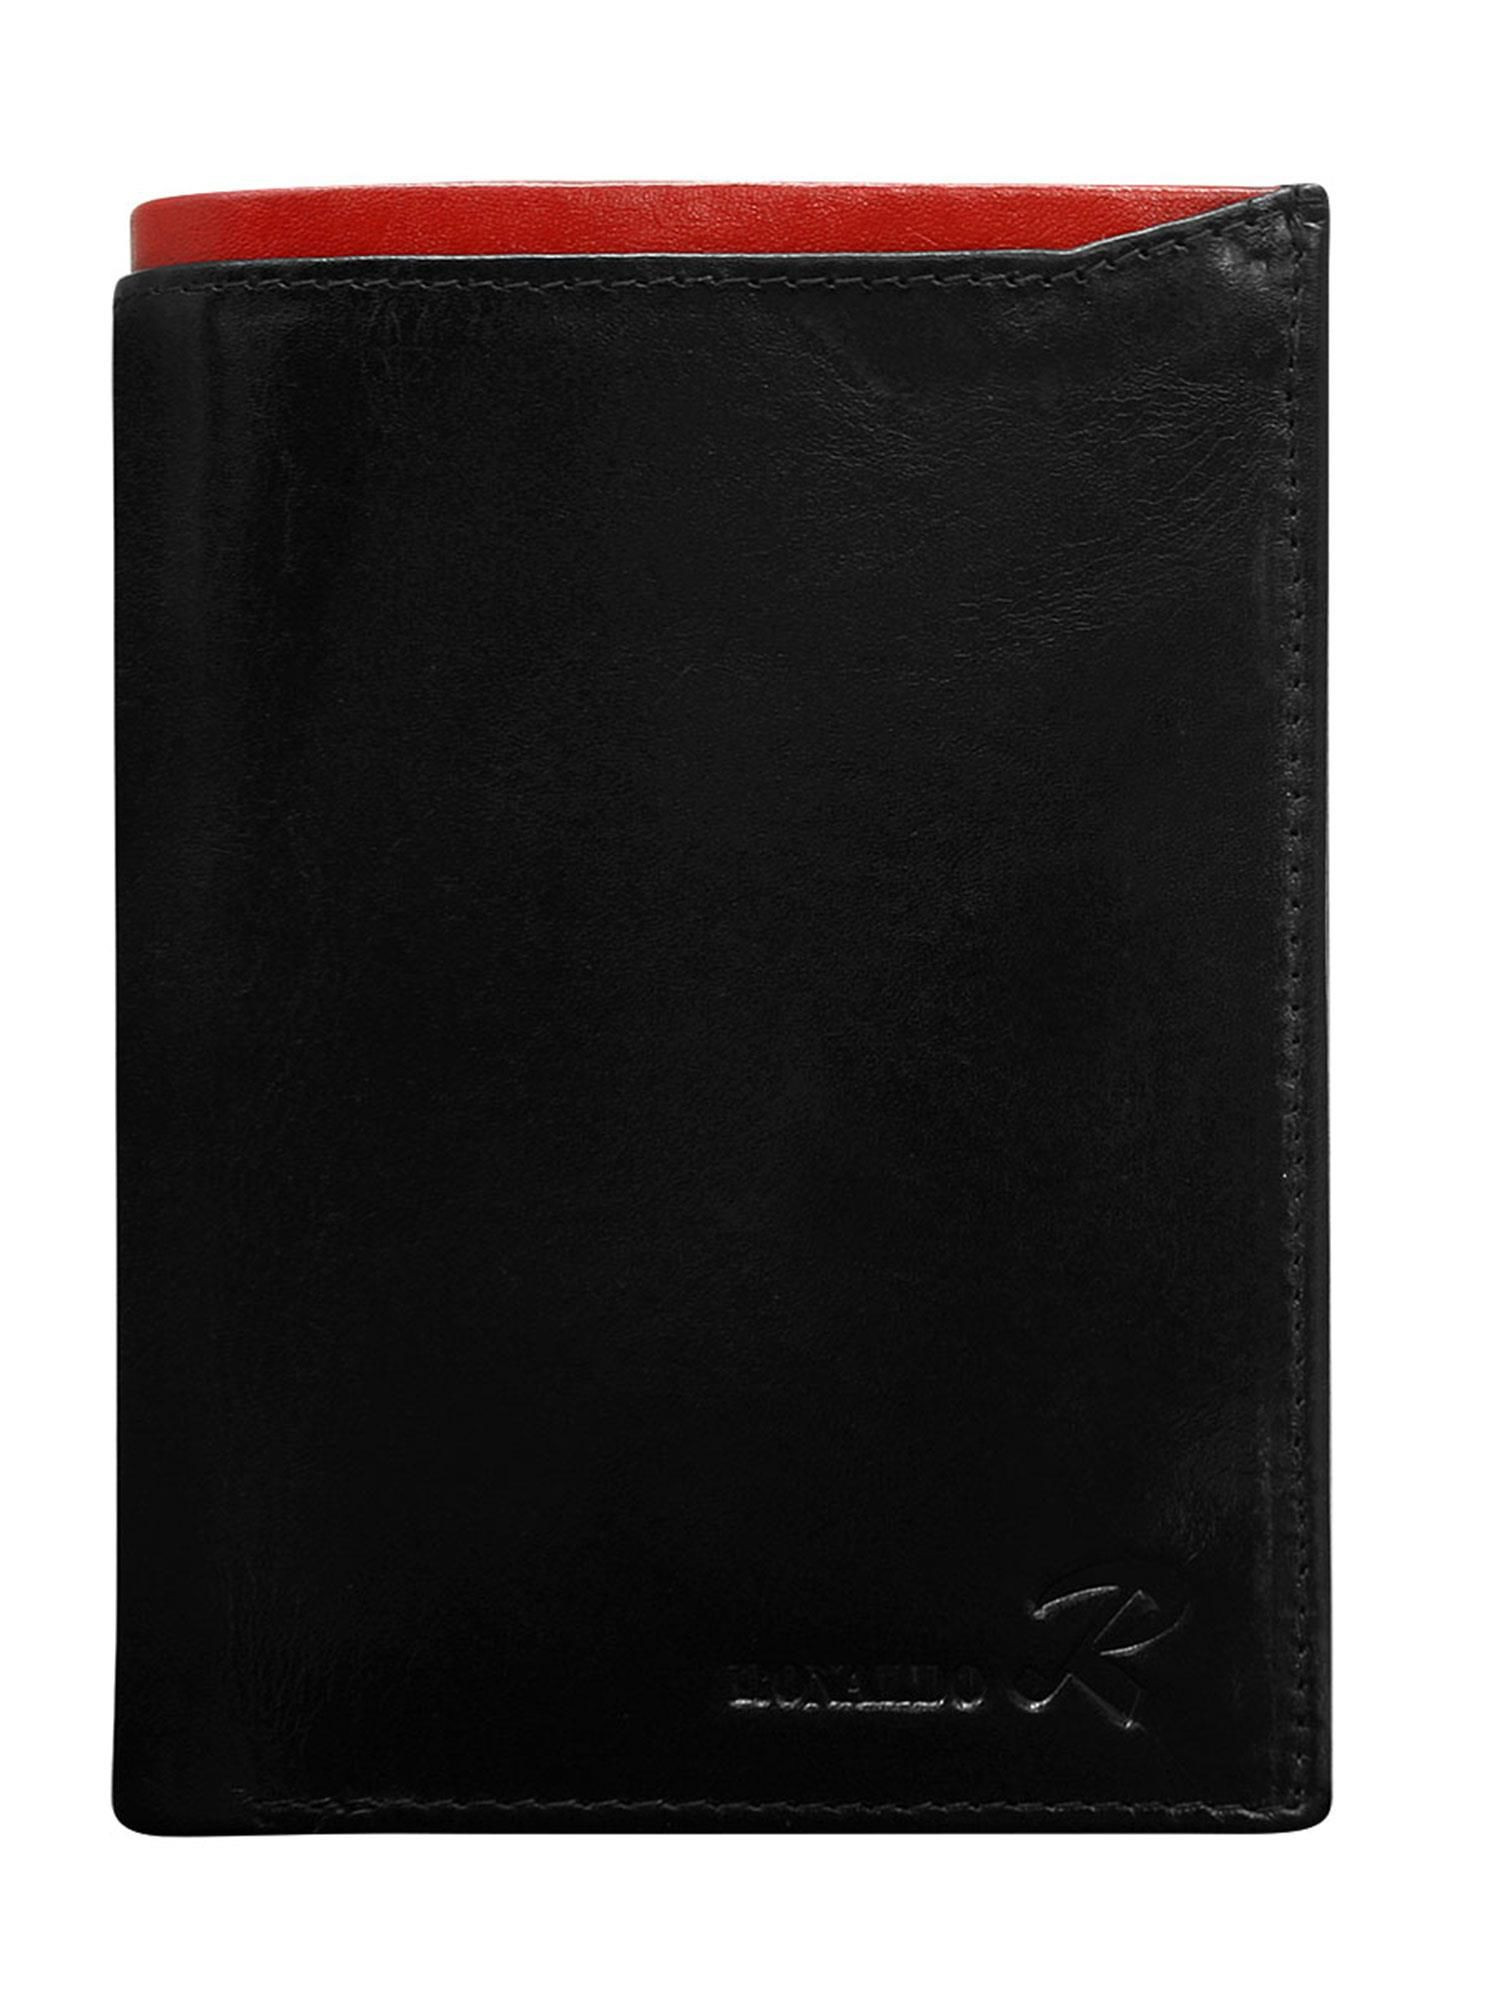 Peněženka CE PR D1072 VT.94 černá a červená jedna velikost